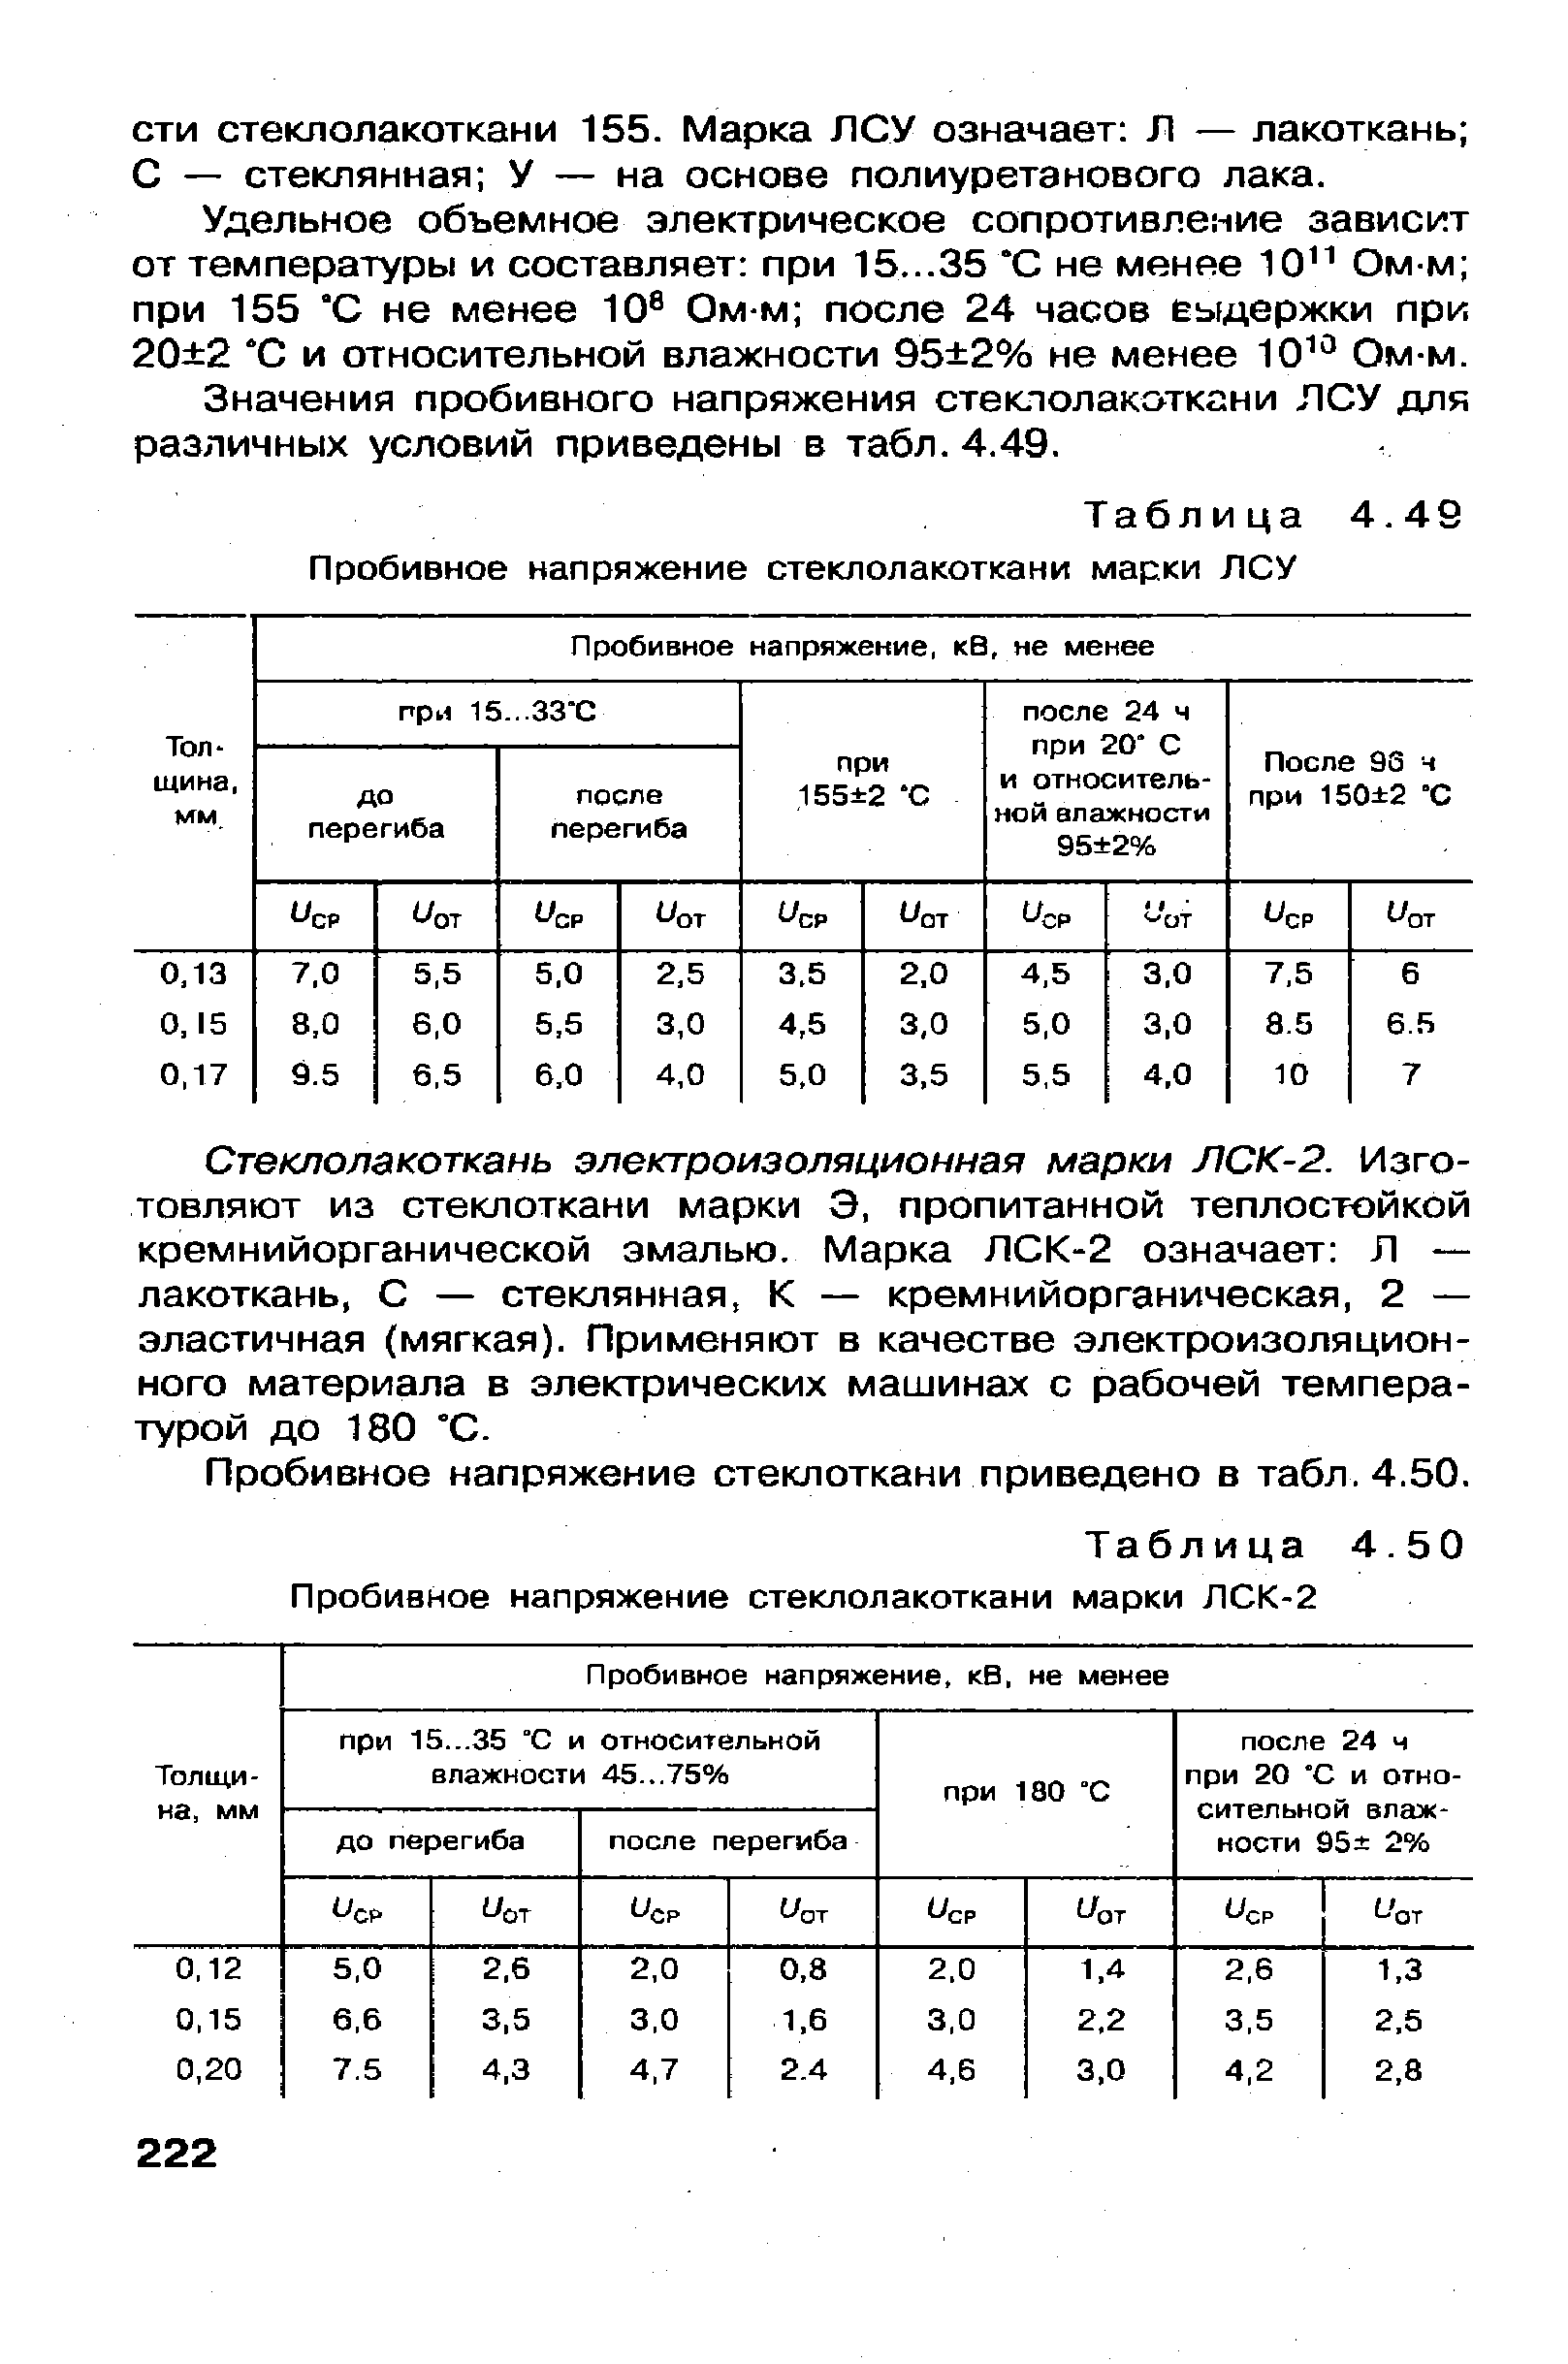 Таблица 4.49 <a href="/info/190672">Пробивное напряжение стеклолакоткани</a> марки ЛСУ
